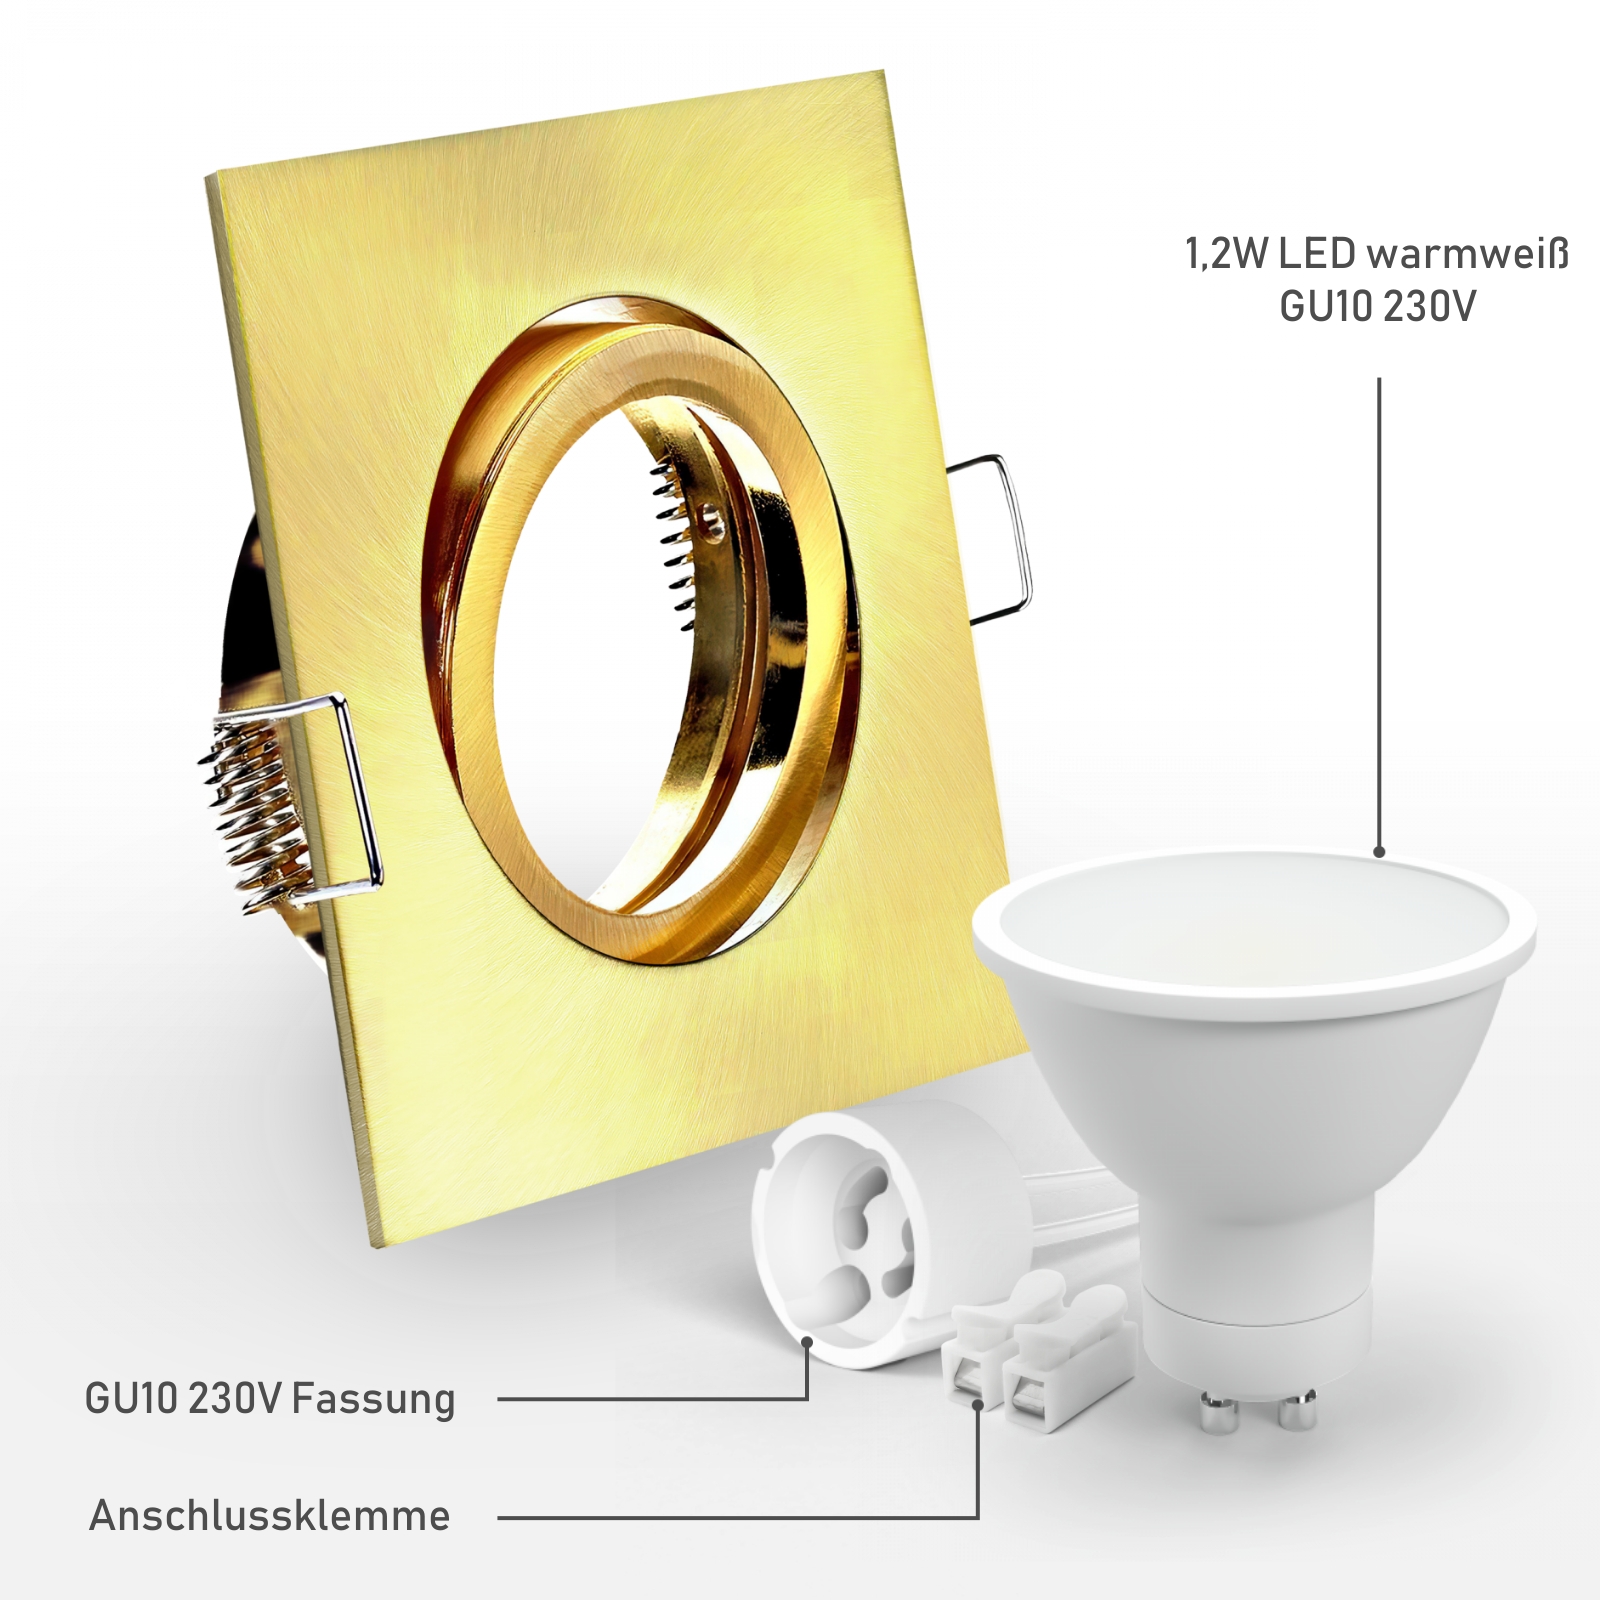 LED Einbaustrahler Gold-Messing gebürstet | quadratisch | 30° schwenkbar | Lochmaß Ø 68mm - 80mm | Einbautiefe 64mm | Anschlussfertig mit GU10 230V Fassung  inkl. 1,2W LED warmweiß GU10 230V